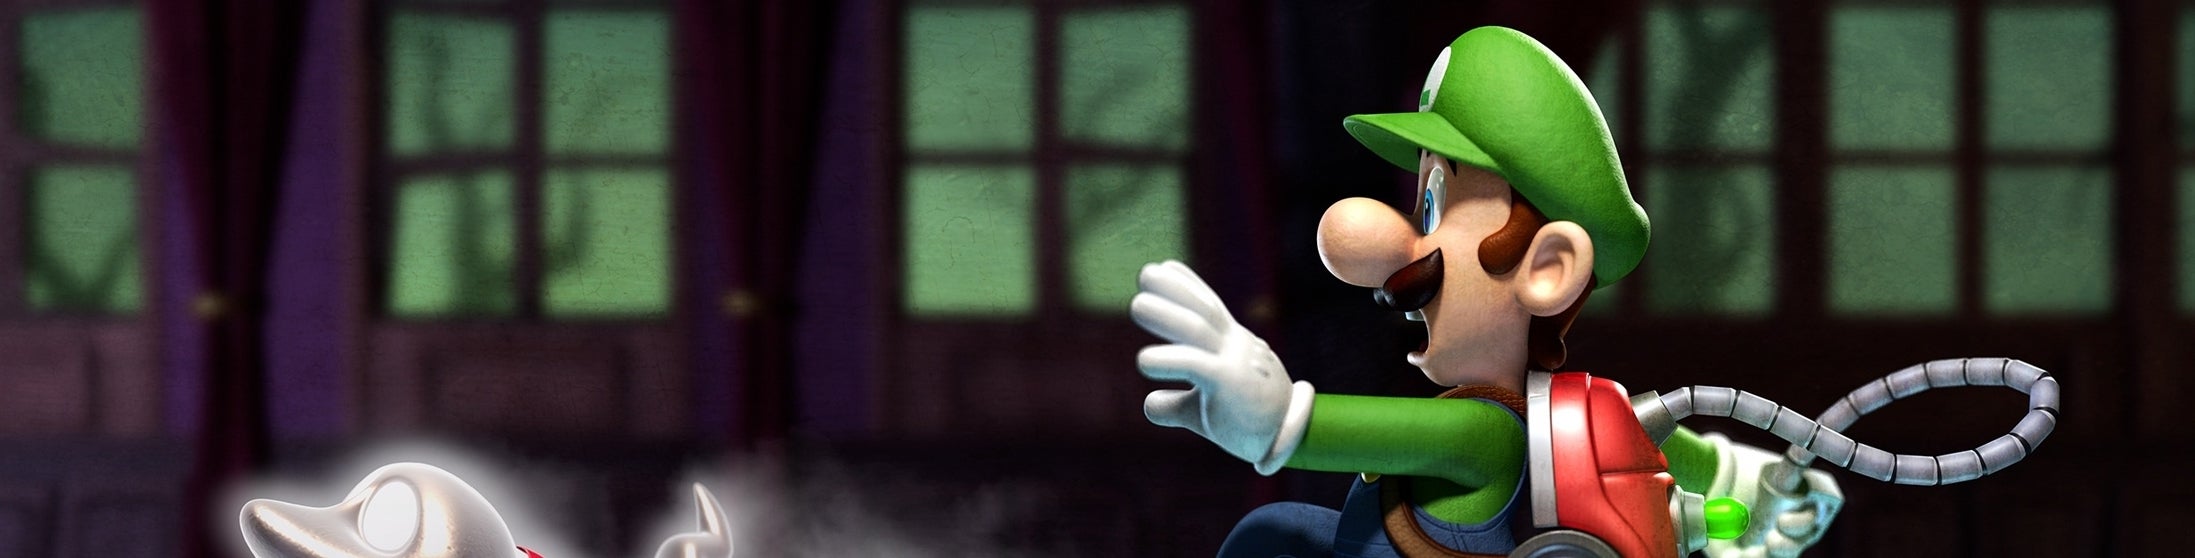 Imagem para Luigi's Mansion 2 - Análise